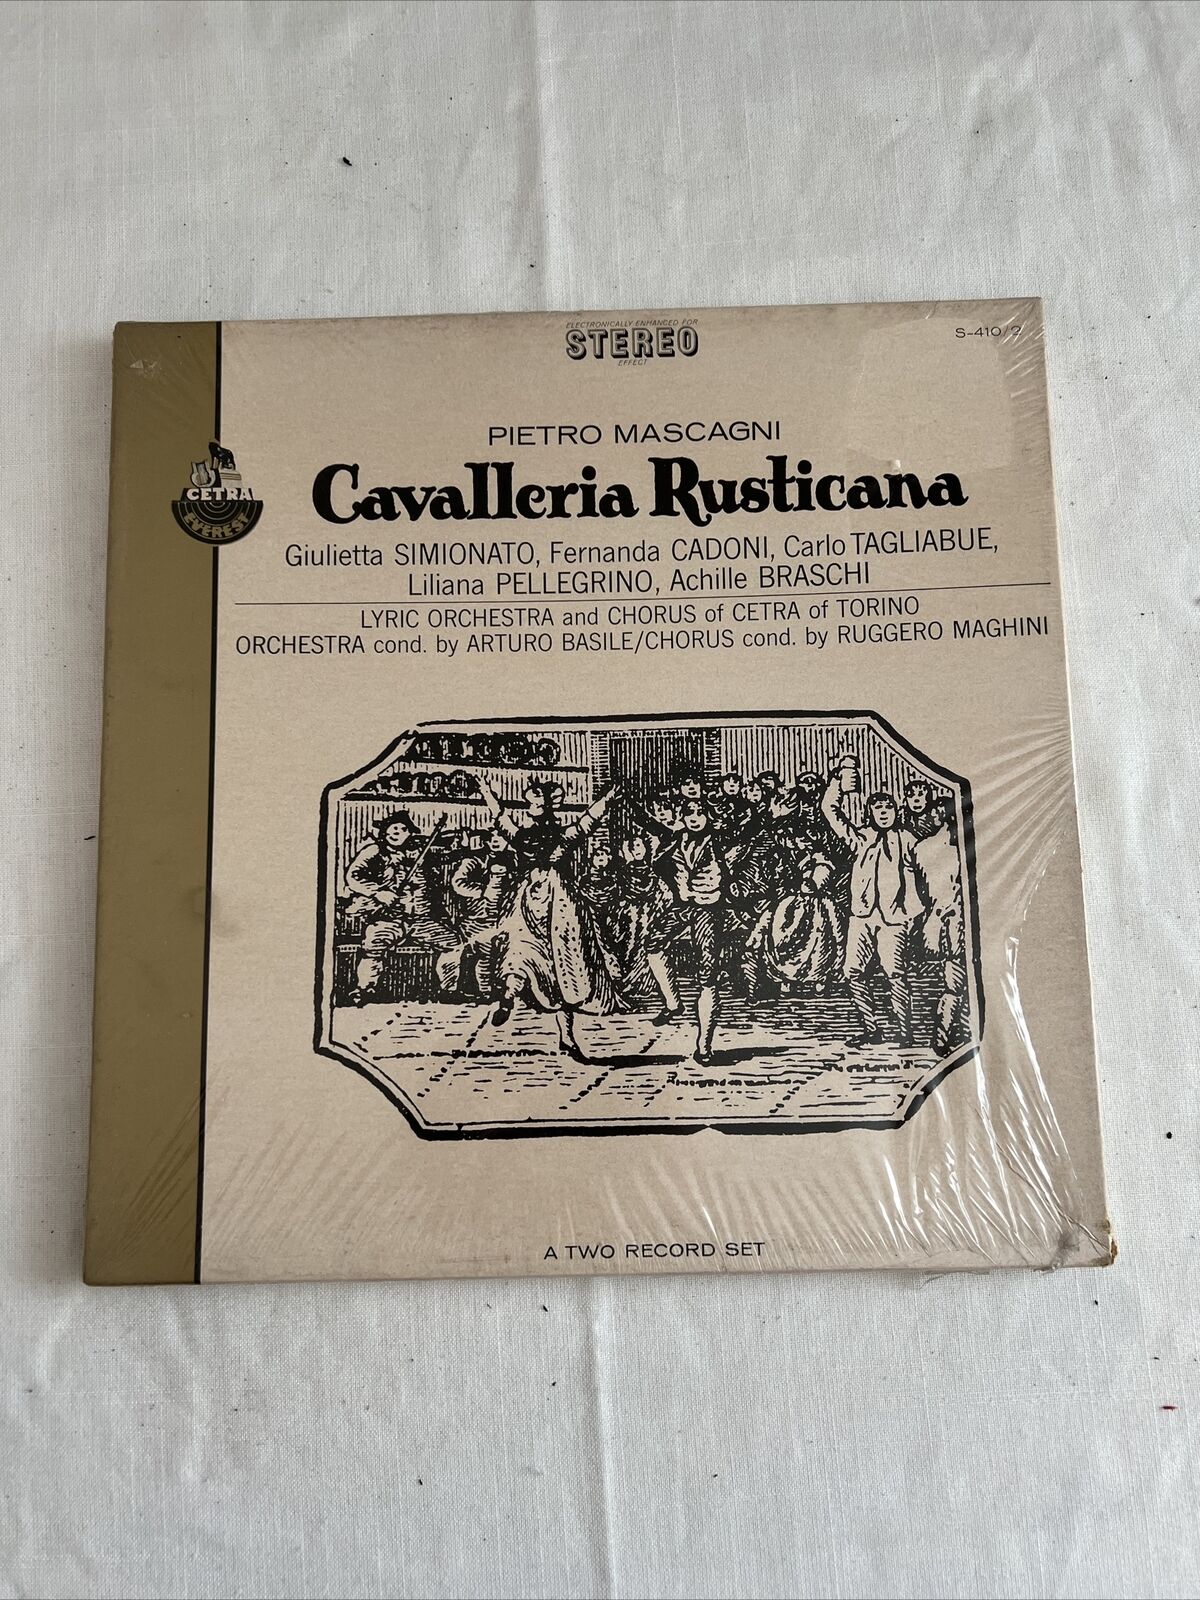 Vintage Pietro Mascagni - Cavalleria Rusticana - Vinyl Record.